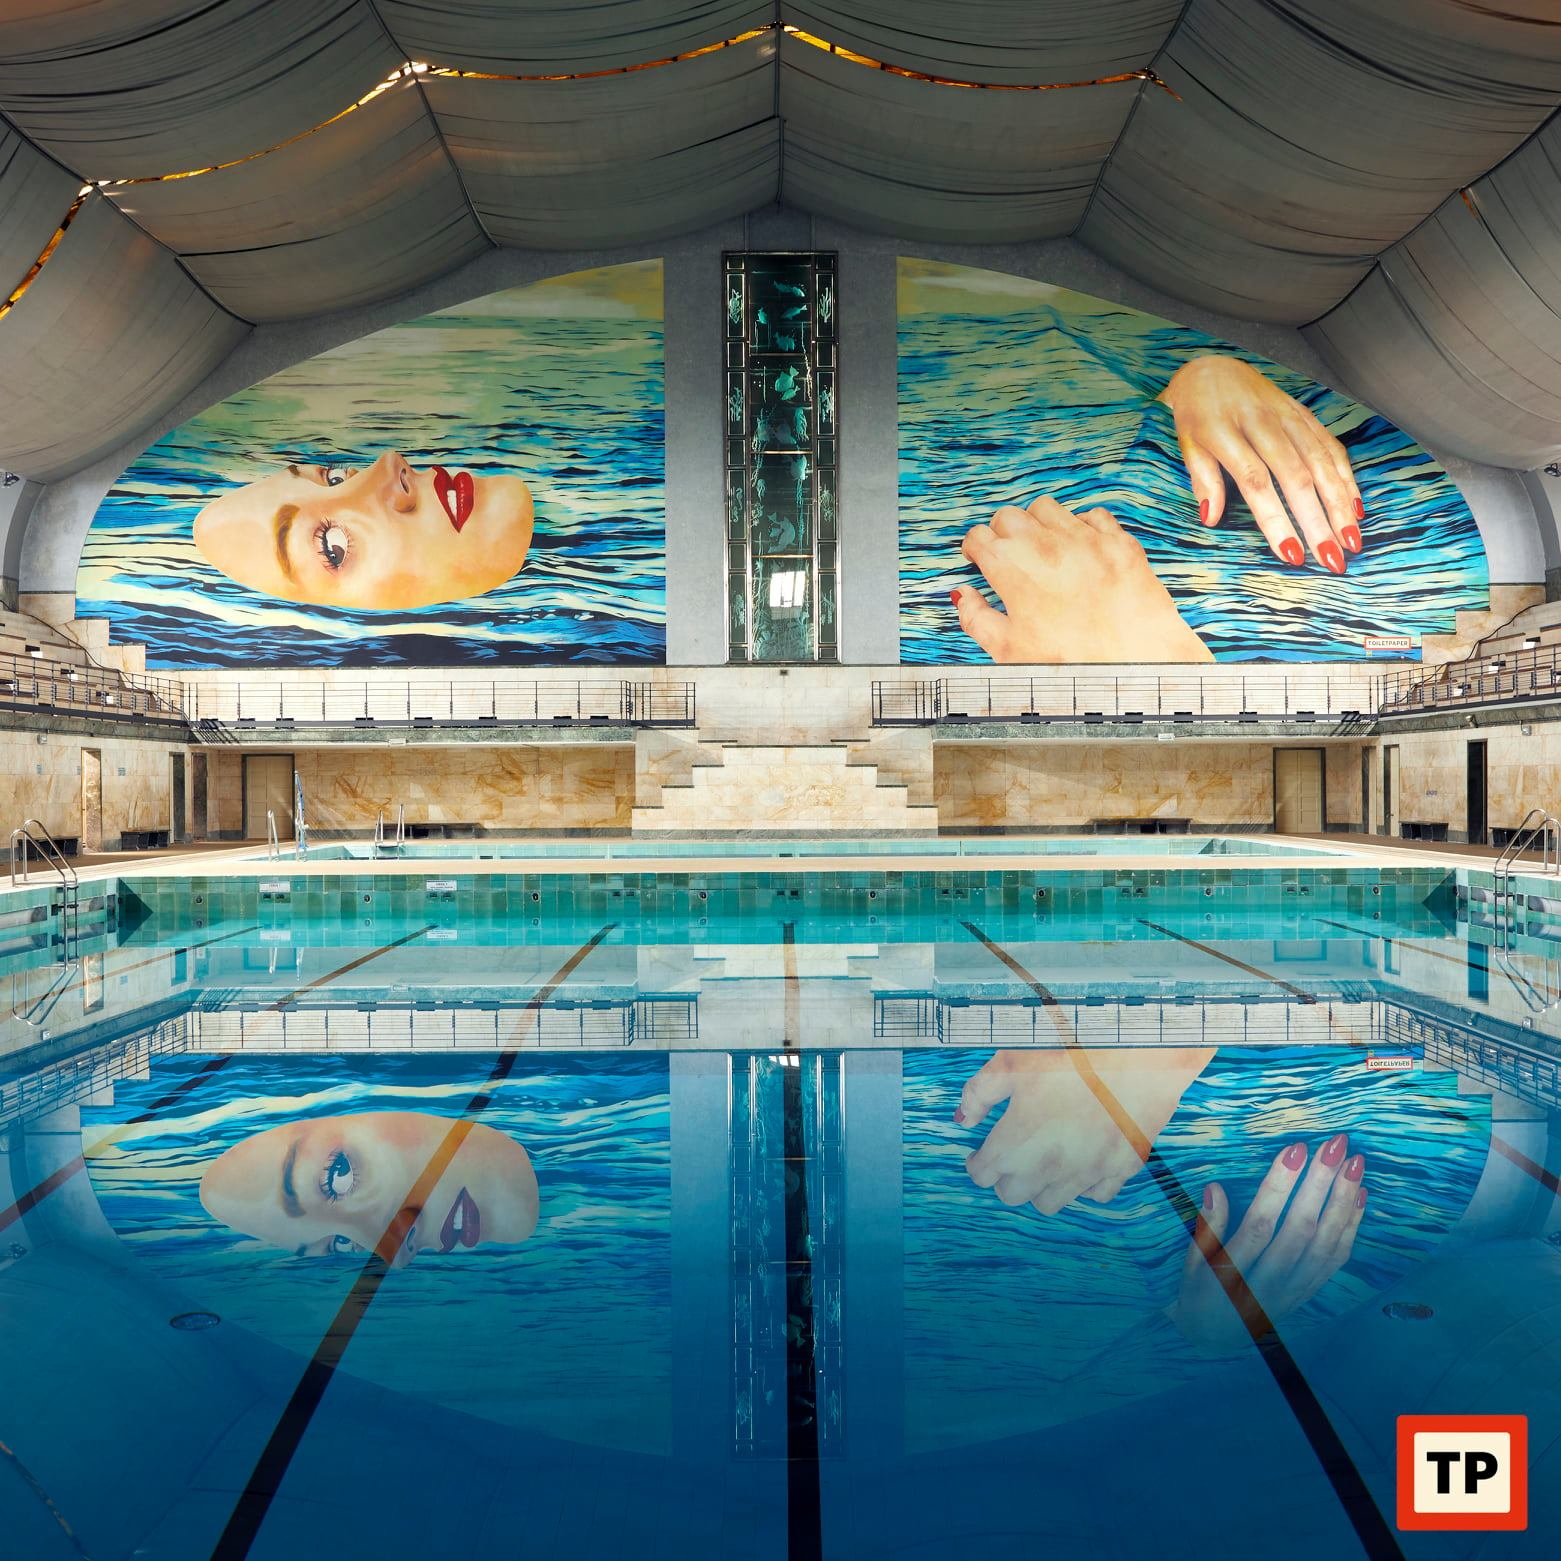 Be Water, la fresque aquatique exposée dans une piscine milanaise